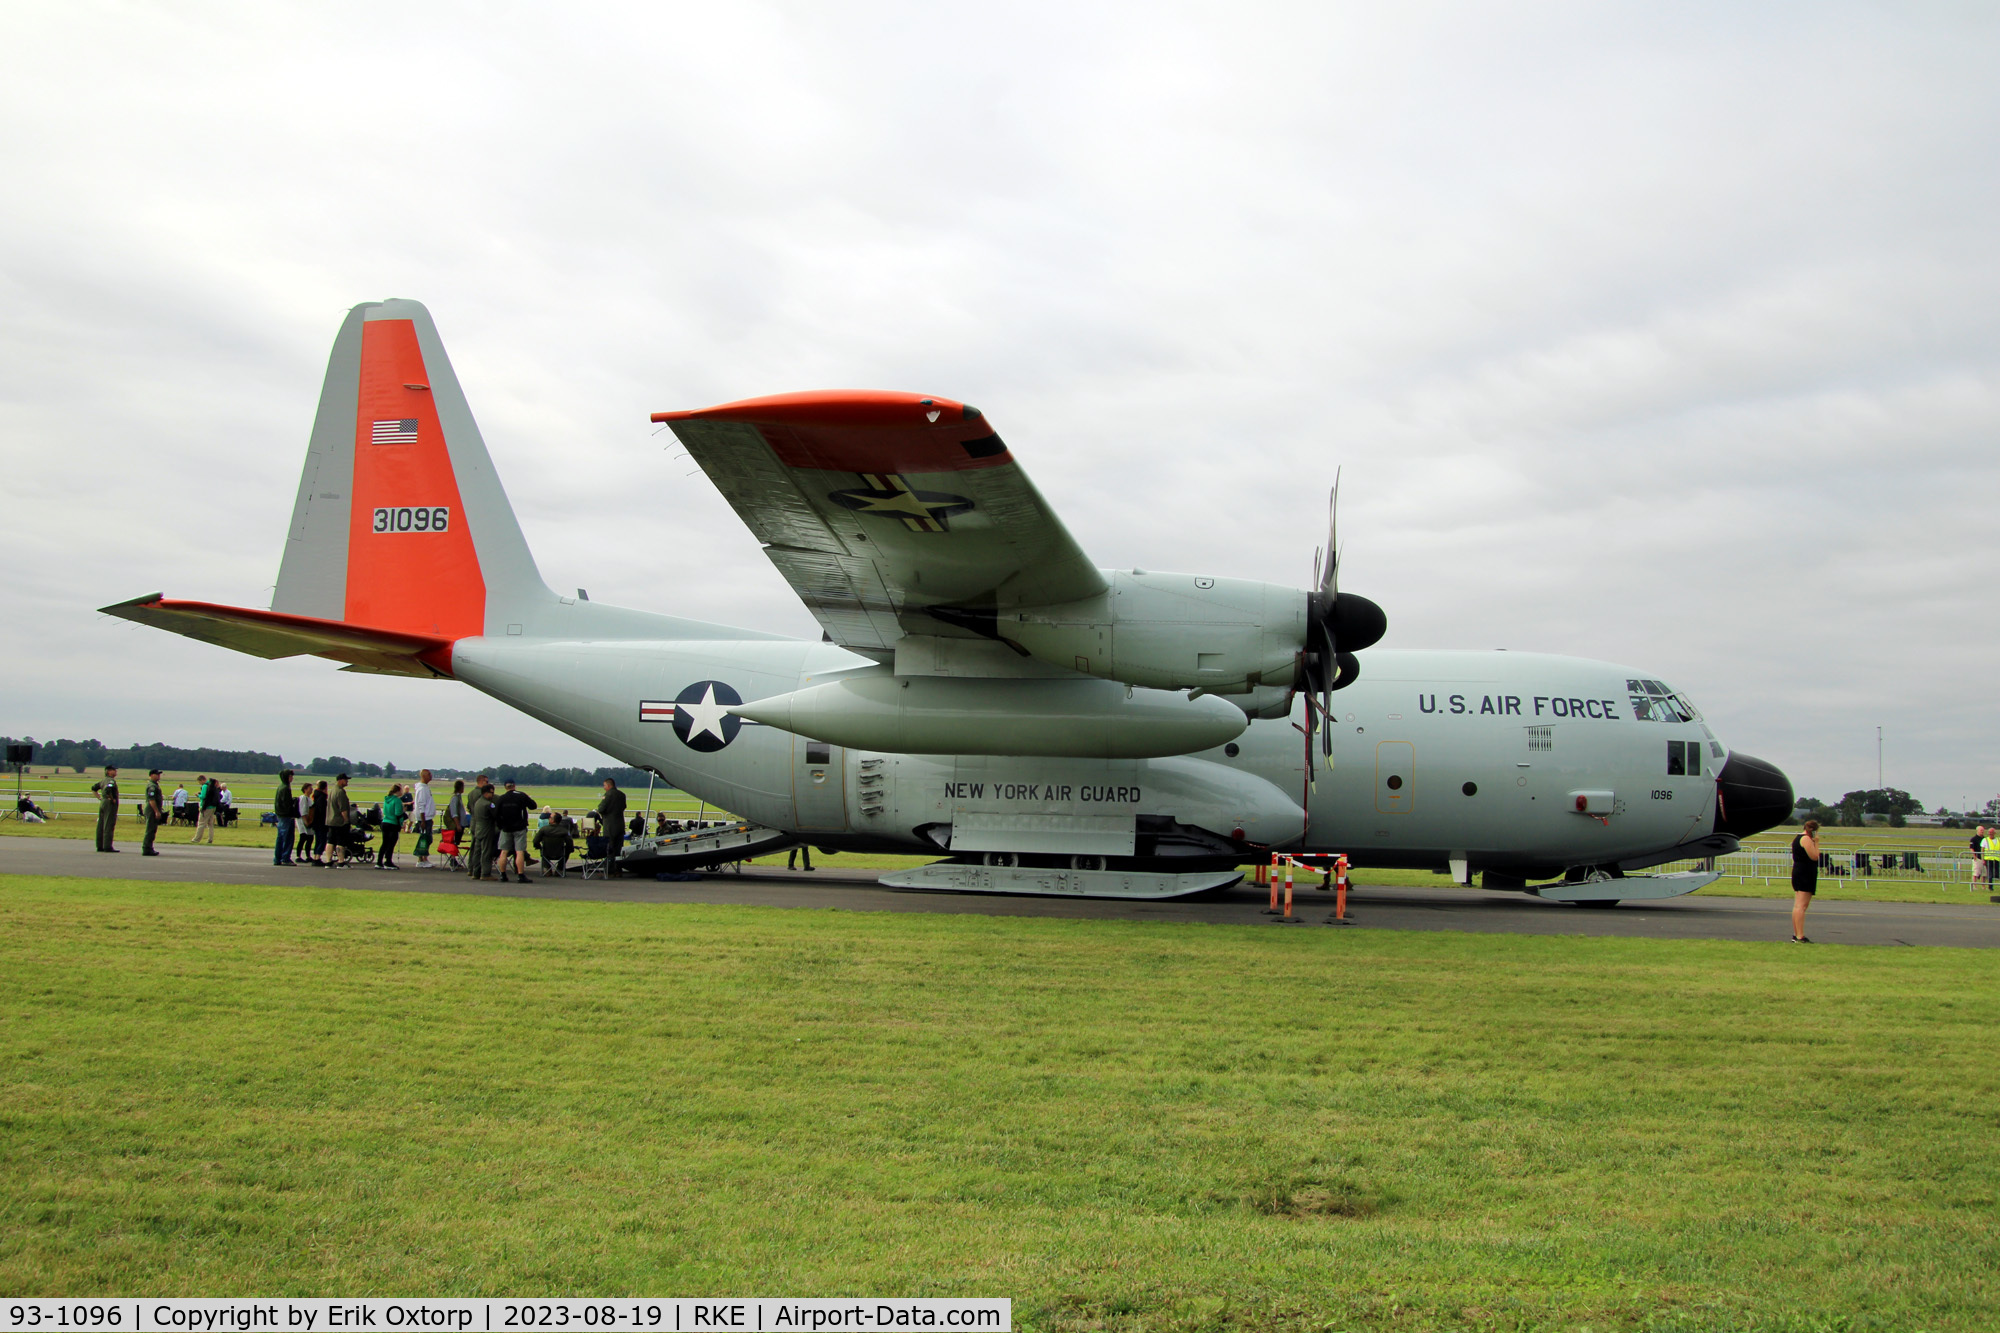 93-1096, 1993 Lockheed LC-130H Hercules C/N 382-5410, 93-1096 at the Roskilde Airshow